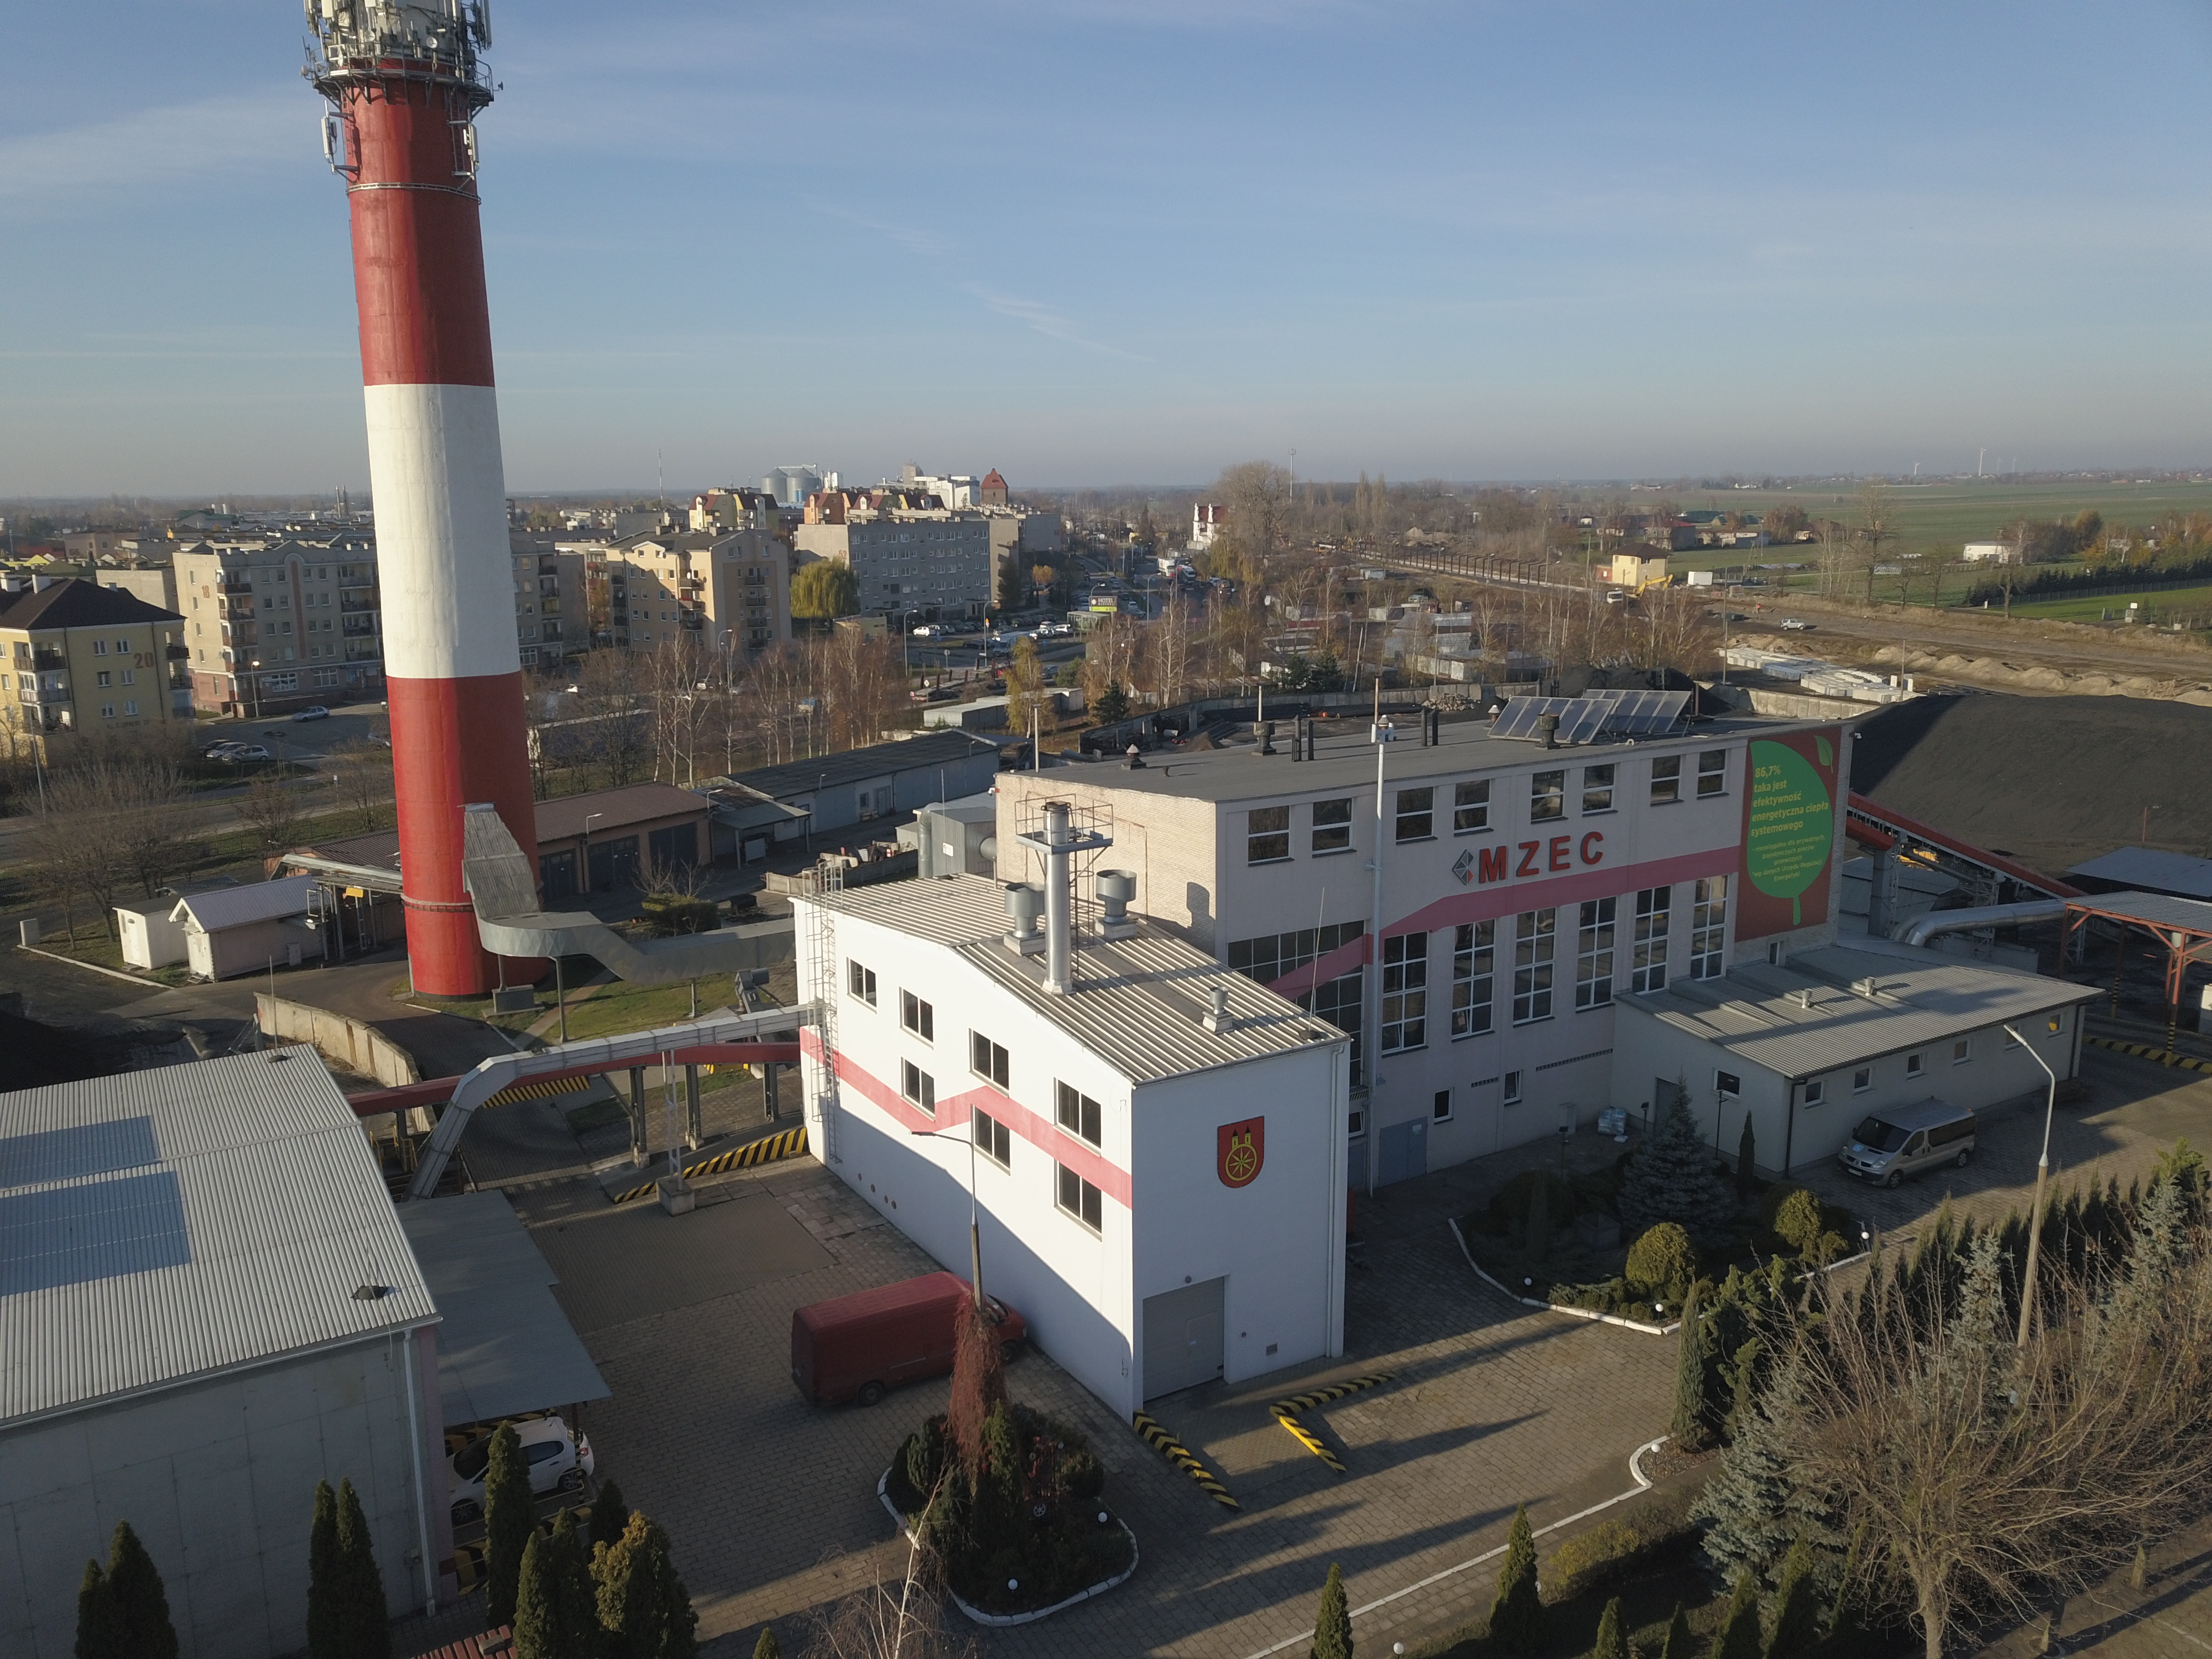 Zdjęcie przedstawia budynek Miejskiego Zakładu Energetyki Cieplnej Sp. z o.o. w Kole z lotu ptaka.